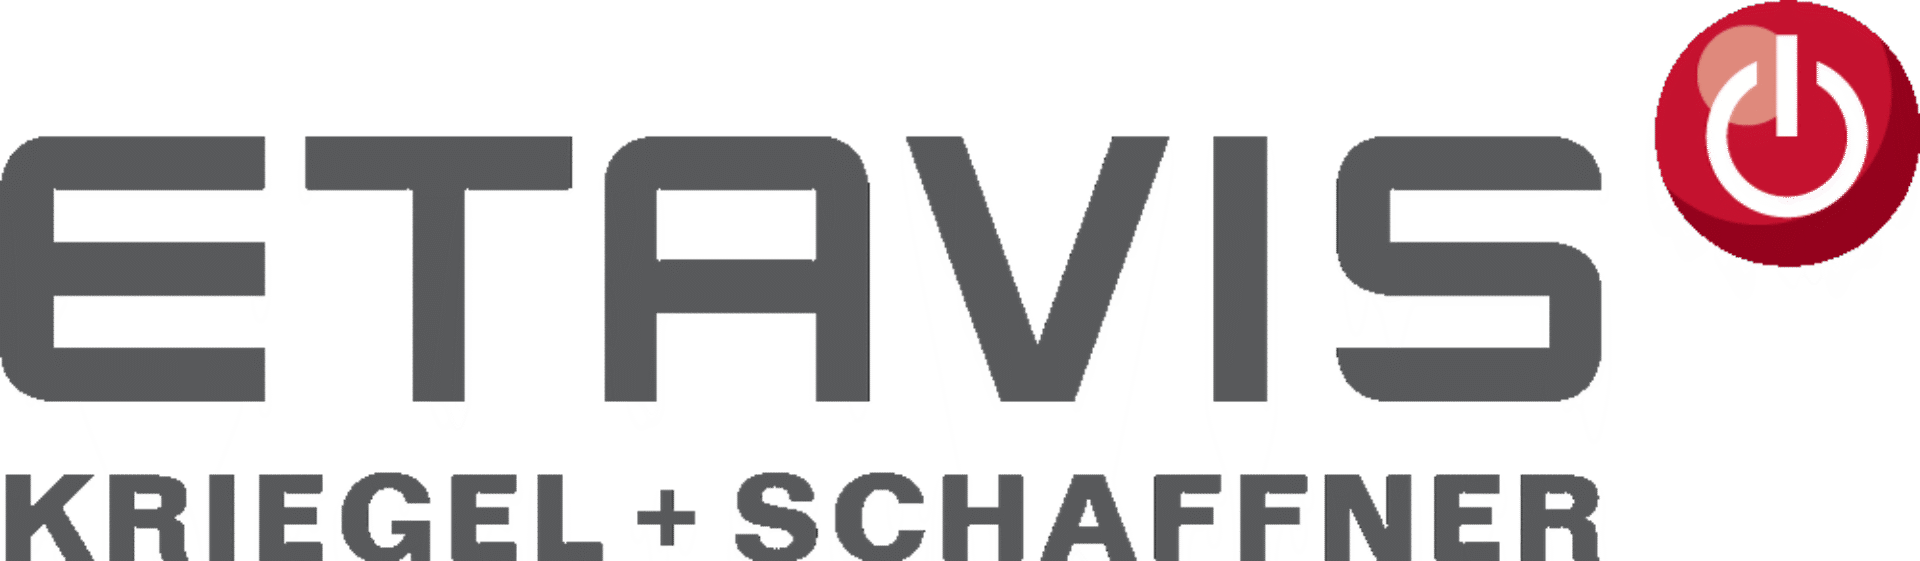 Etavis Kriegel + Schaffner AG Logo